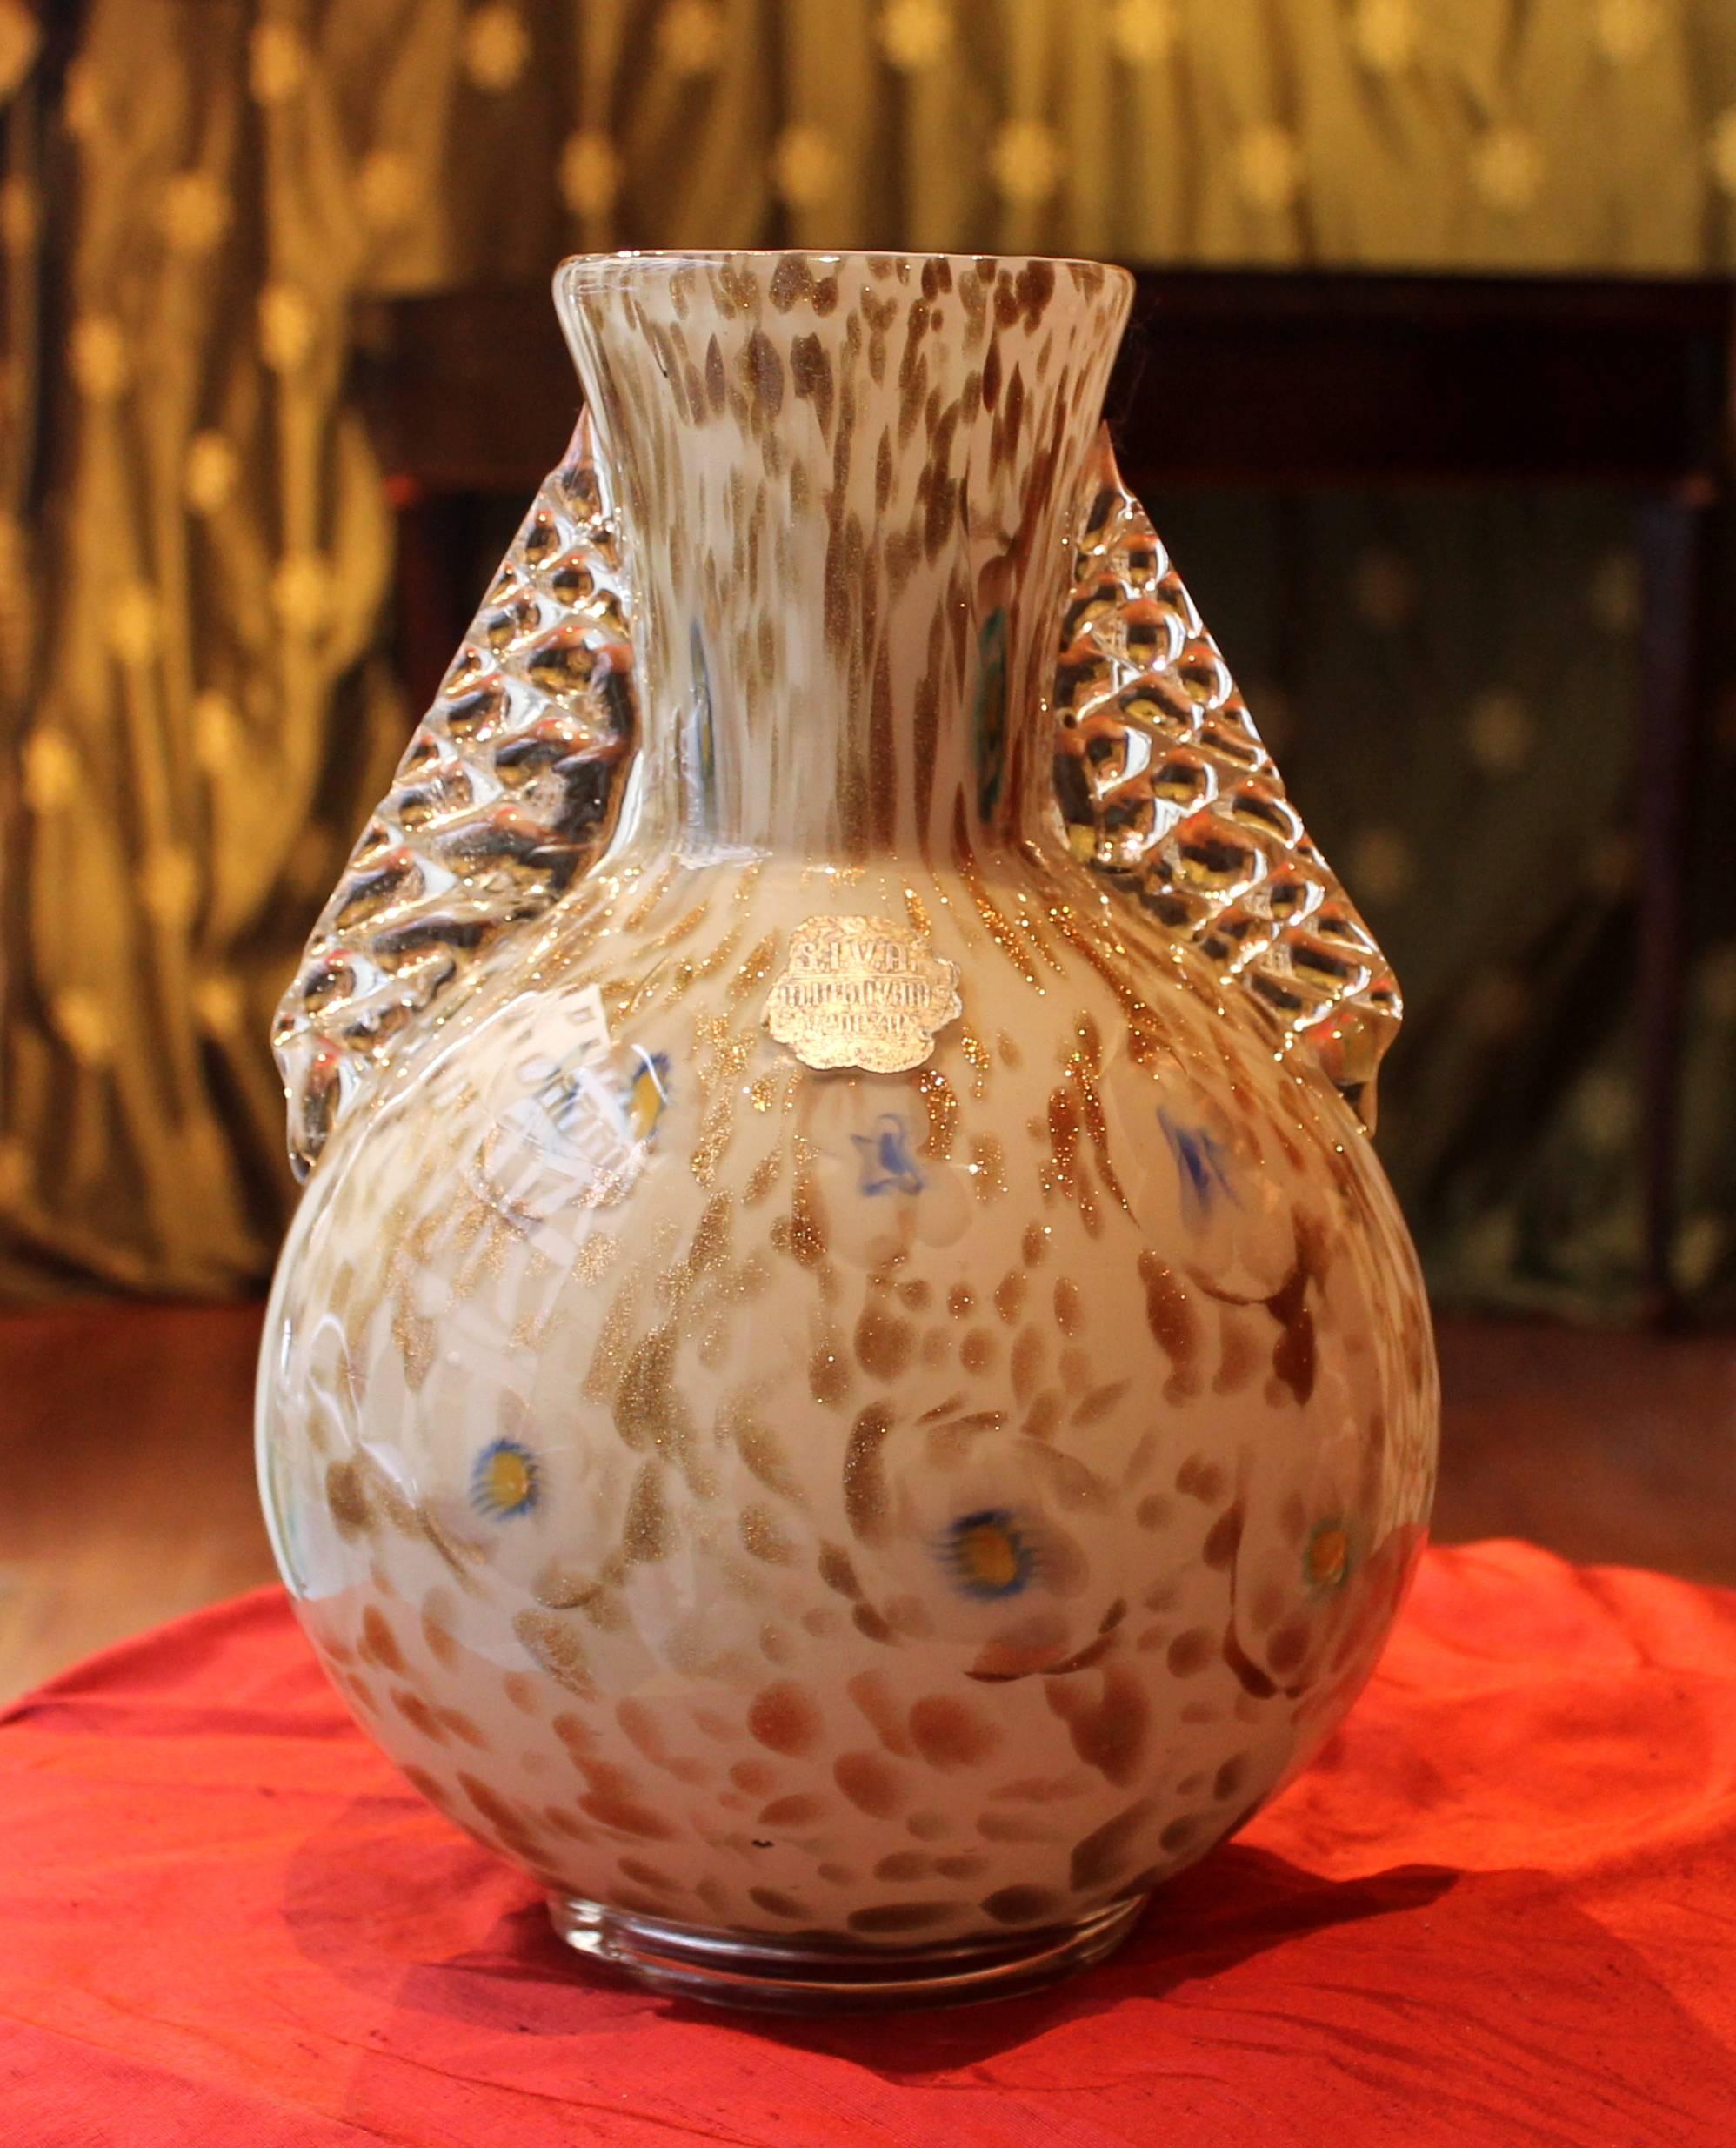 Ce magnifique vase italien de Murano soufflé à la main, datant du milieu du siècle dernier, présente un élégant fond blanc laiteux avec des mouchetures dorées et des motifs floraux bleu clair. Il porte l'étiquette originale de la manufacture de